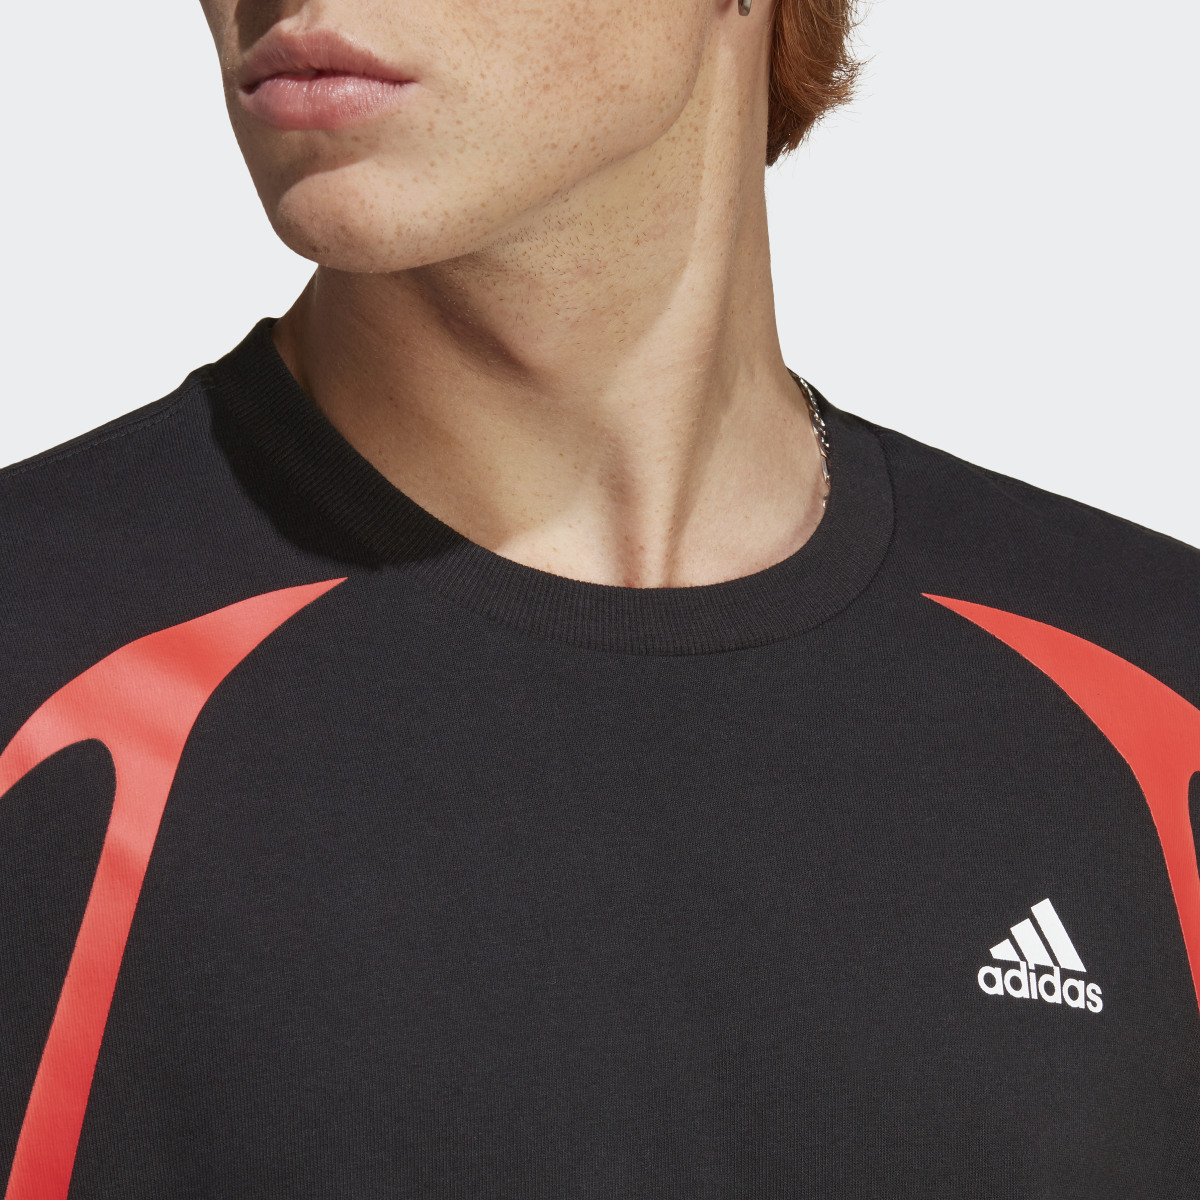 Adidas Camiseta Colourblock. 6